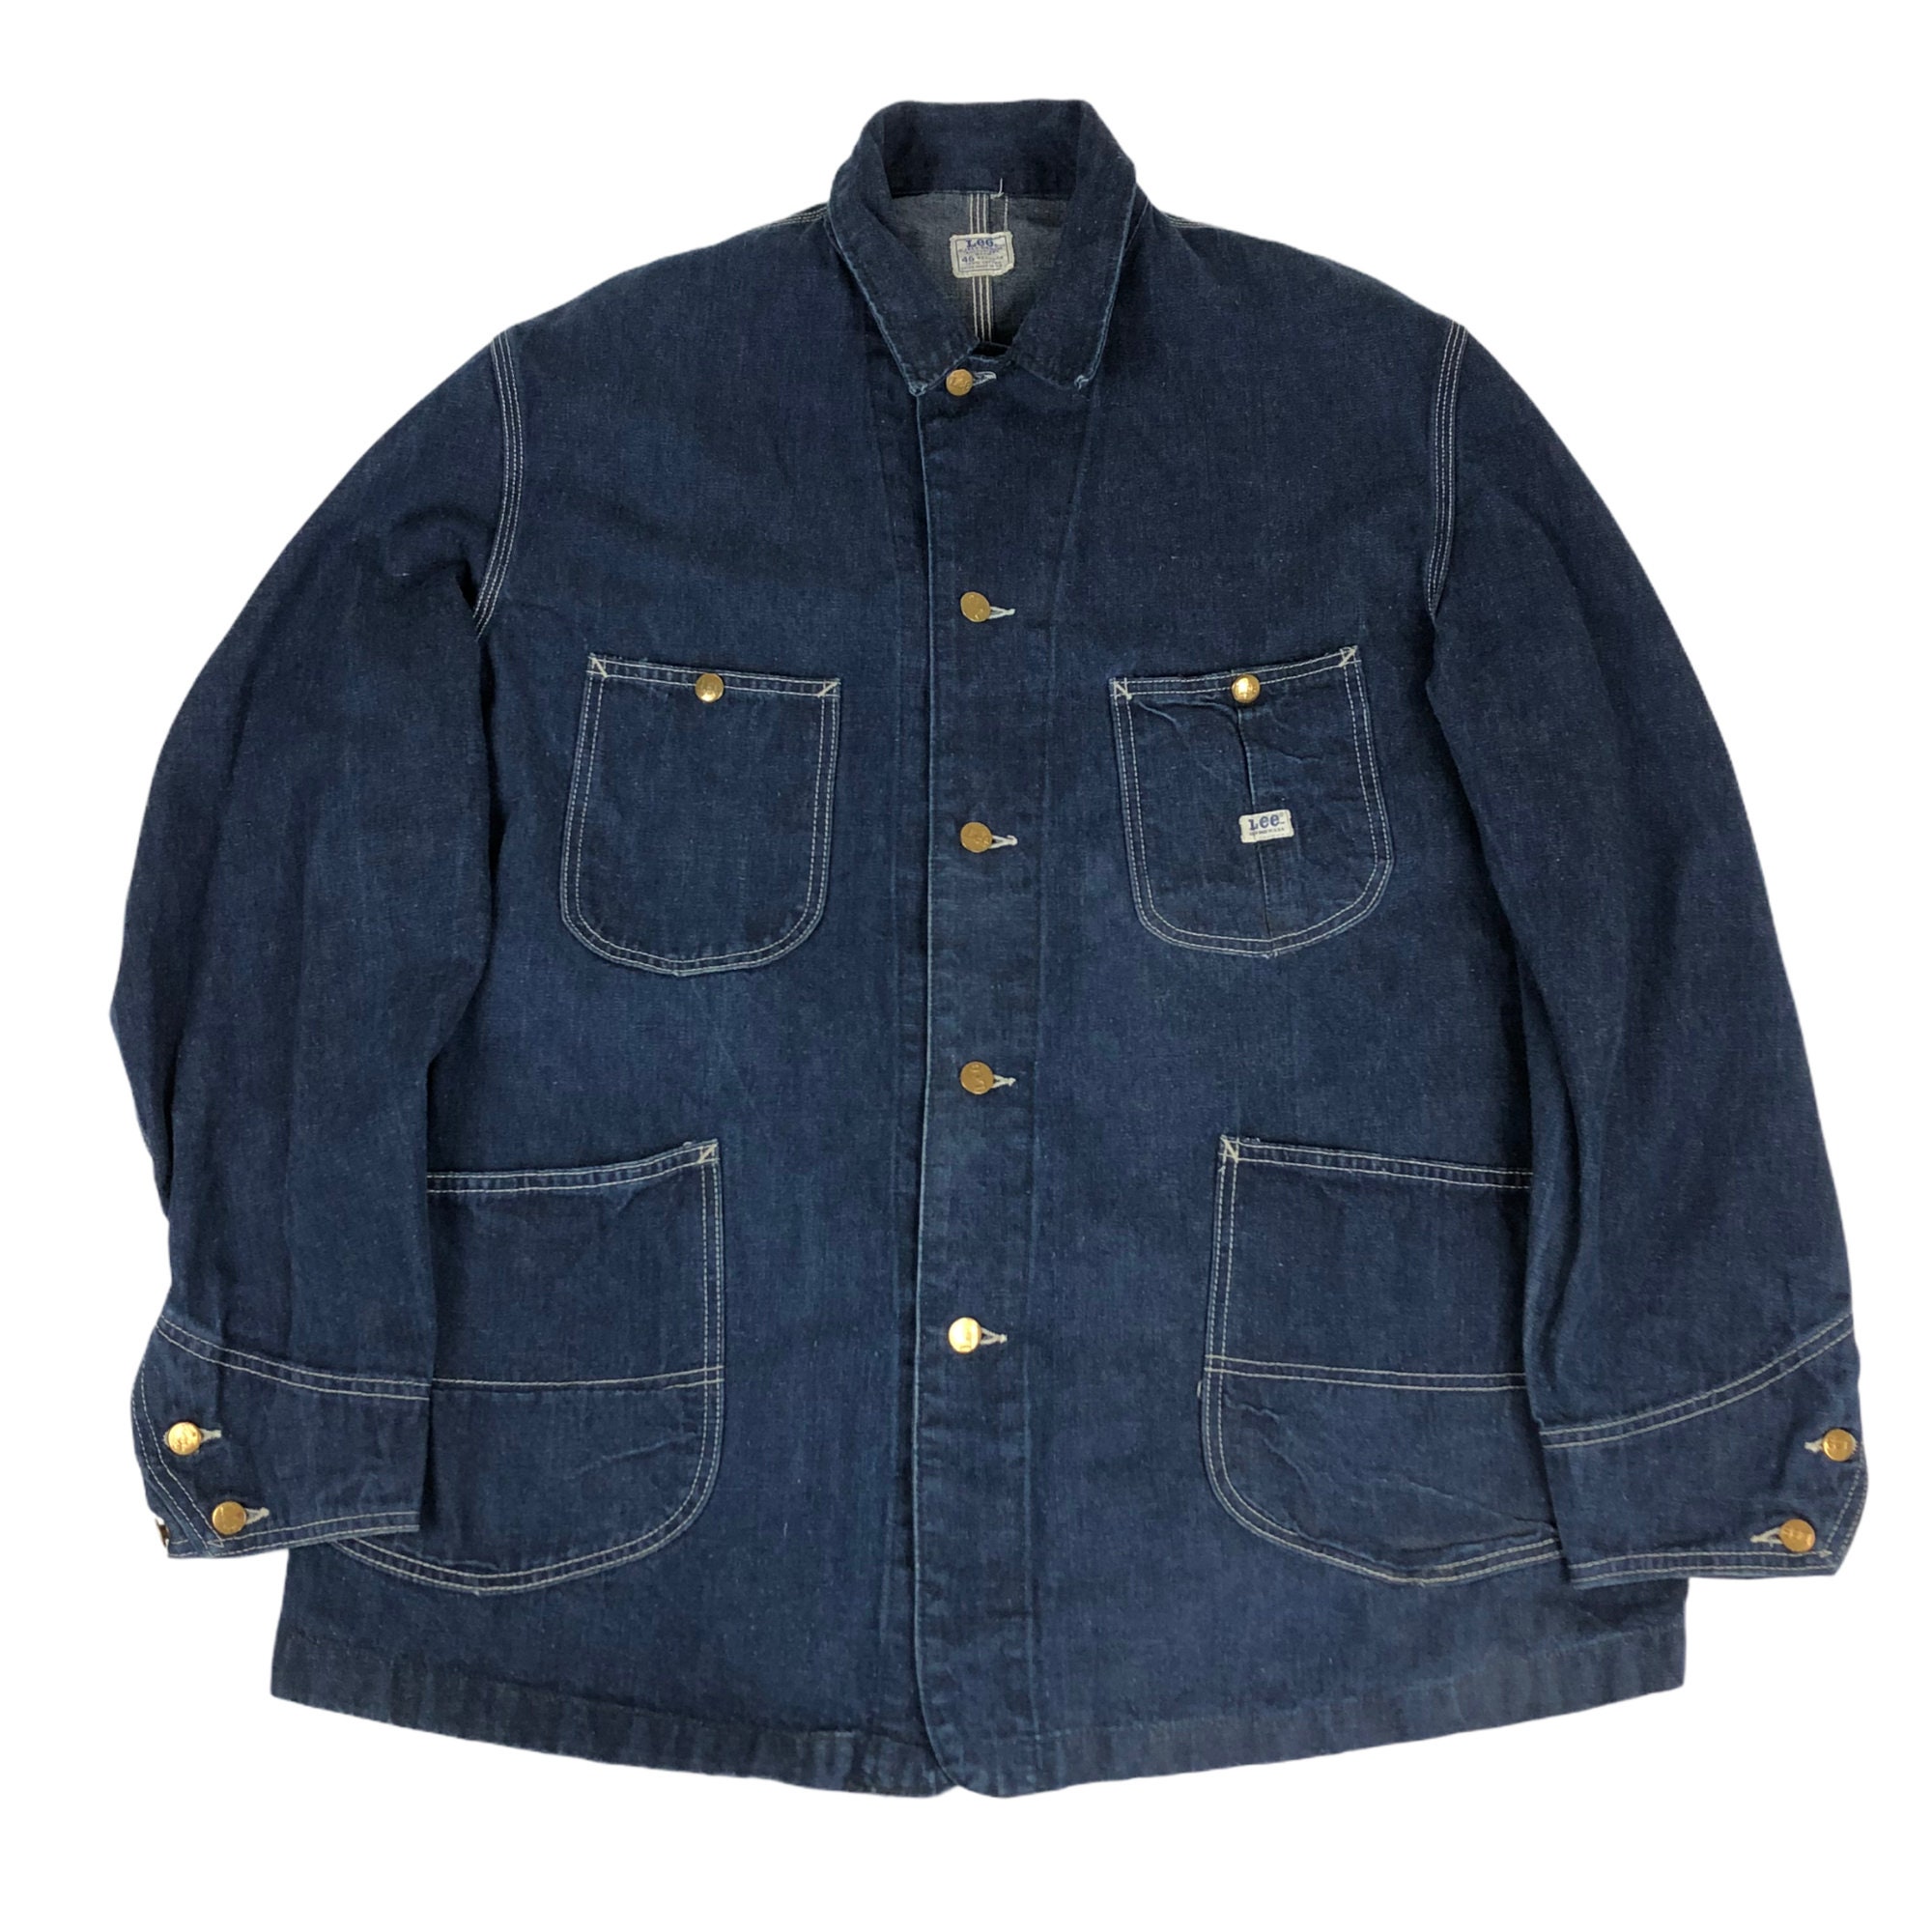 1960s Lee Jelt Denim Sanforized Union Made Chore Jacket Size | Etsy